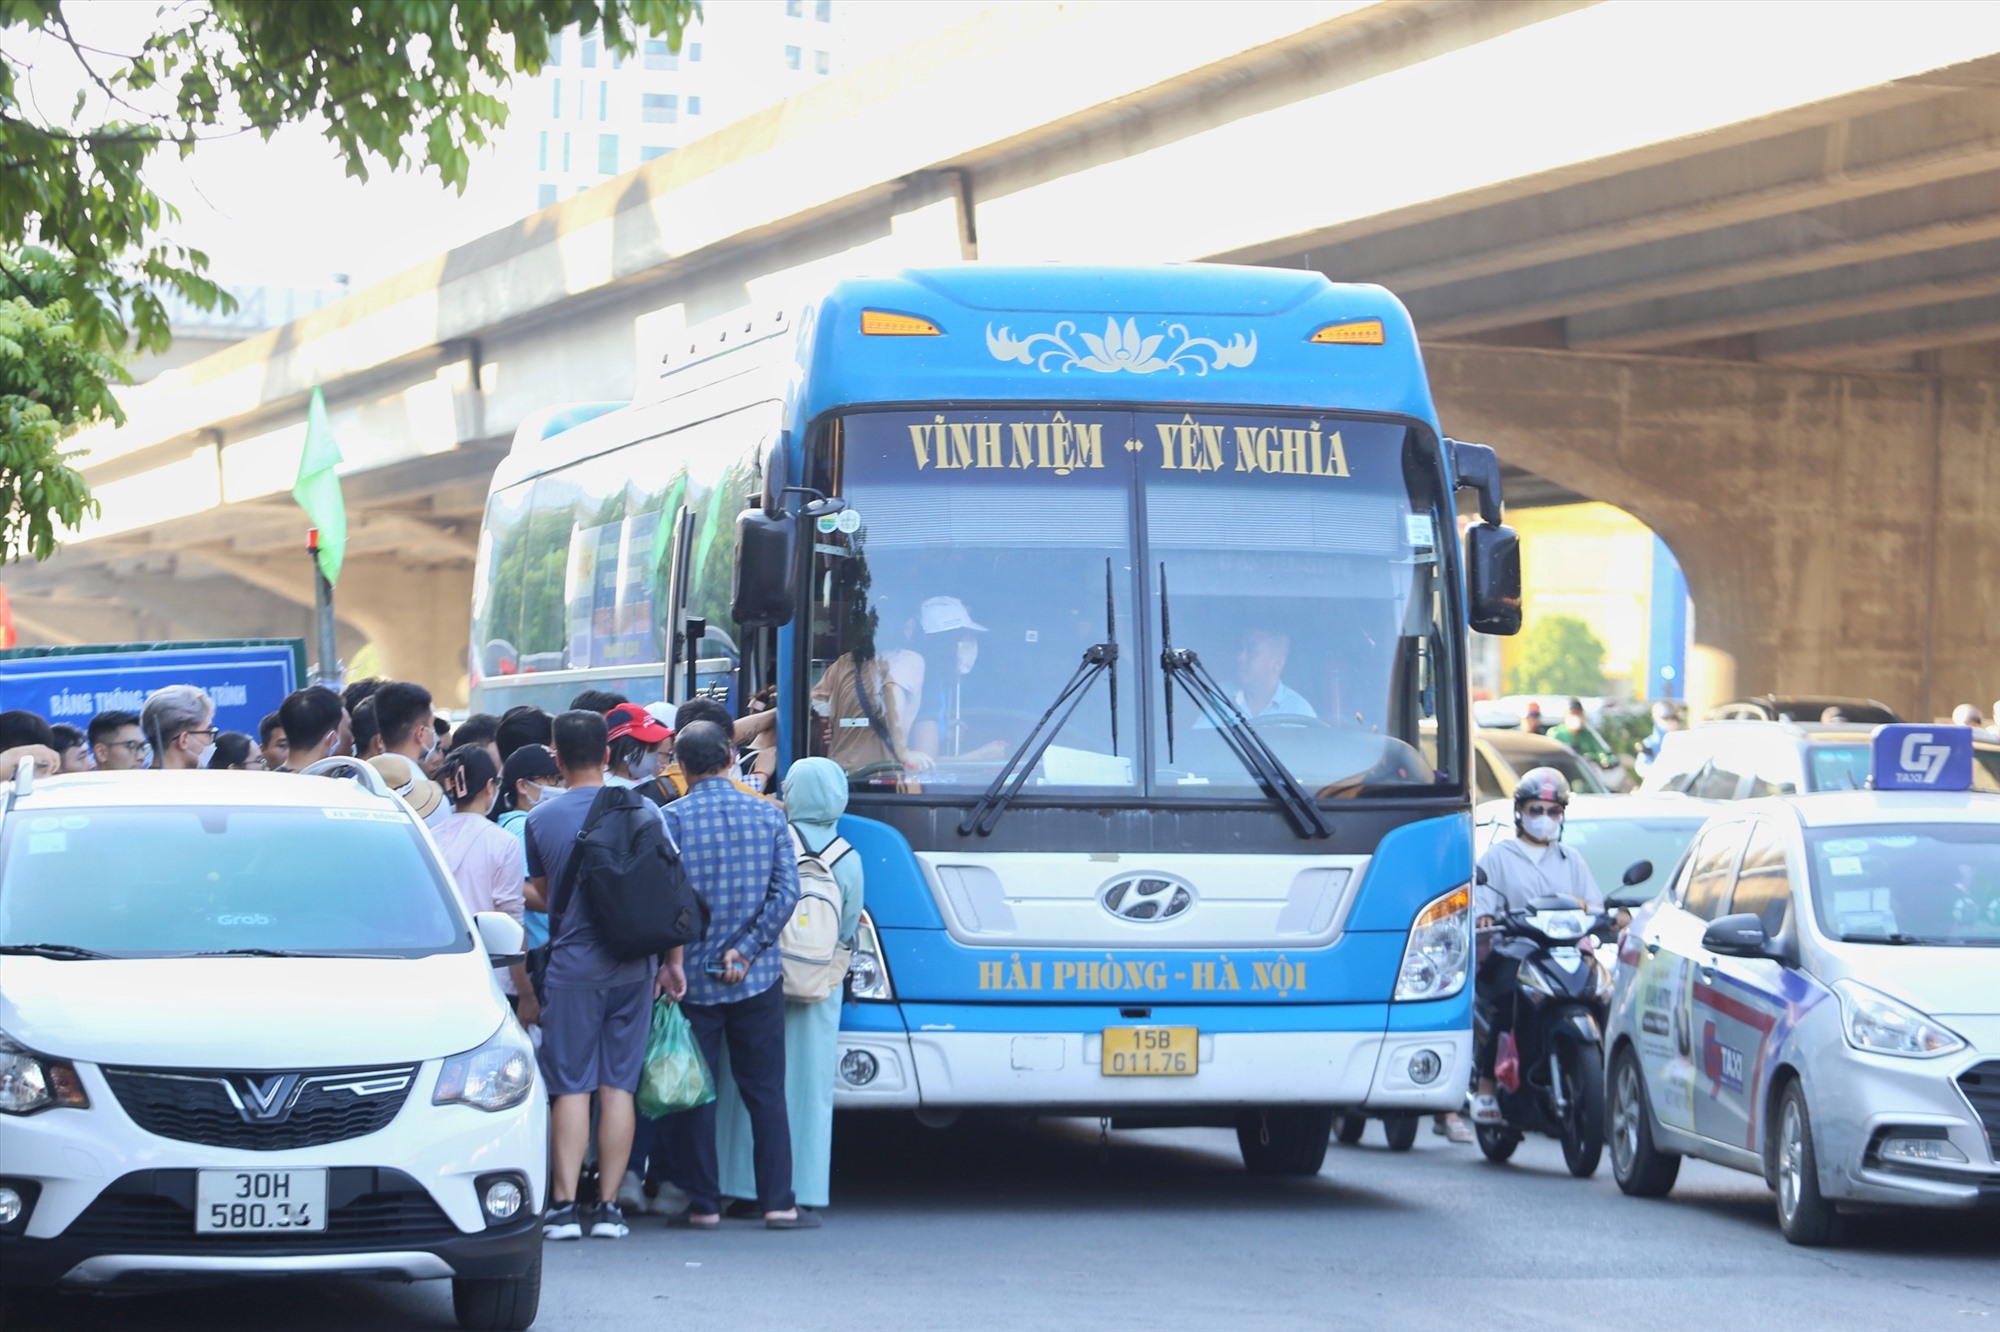 Trên đường Nguyễn Xiển, đặc biệt gần nút giao Nguyễn Xiển - Nguyễn Trãi, rất nhiều xe khách, xe hợp đồng dừng đỗ đón khách, là một trong những nguyên nhân gây ùn tắc cục bộ.